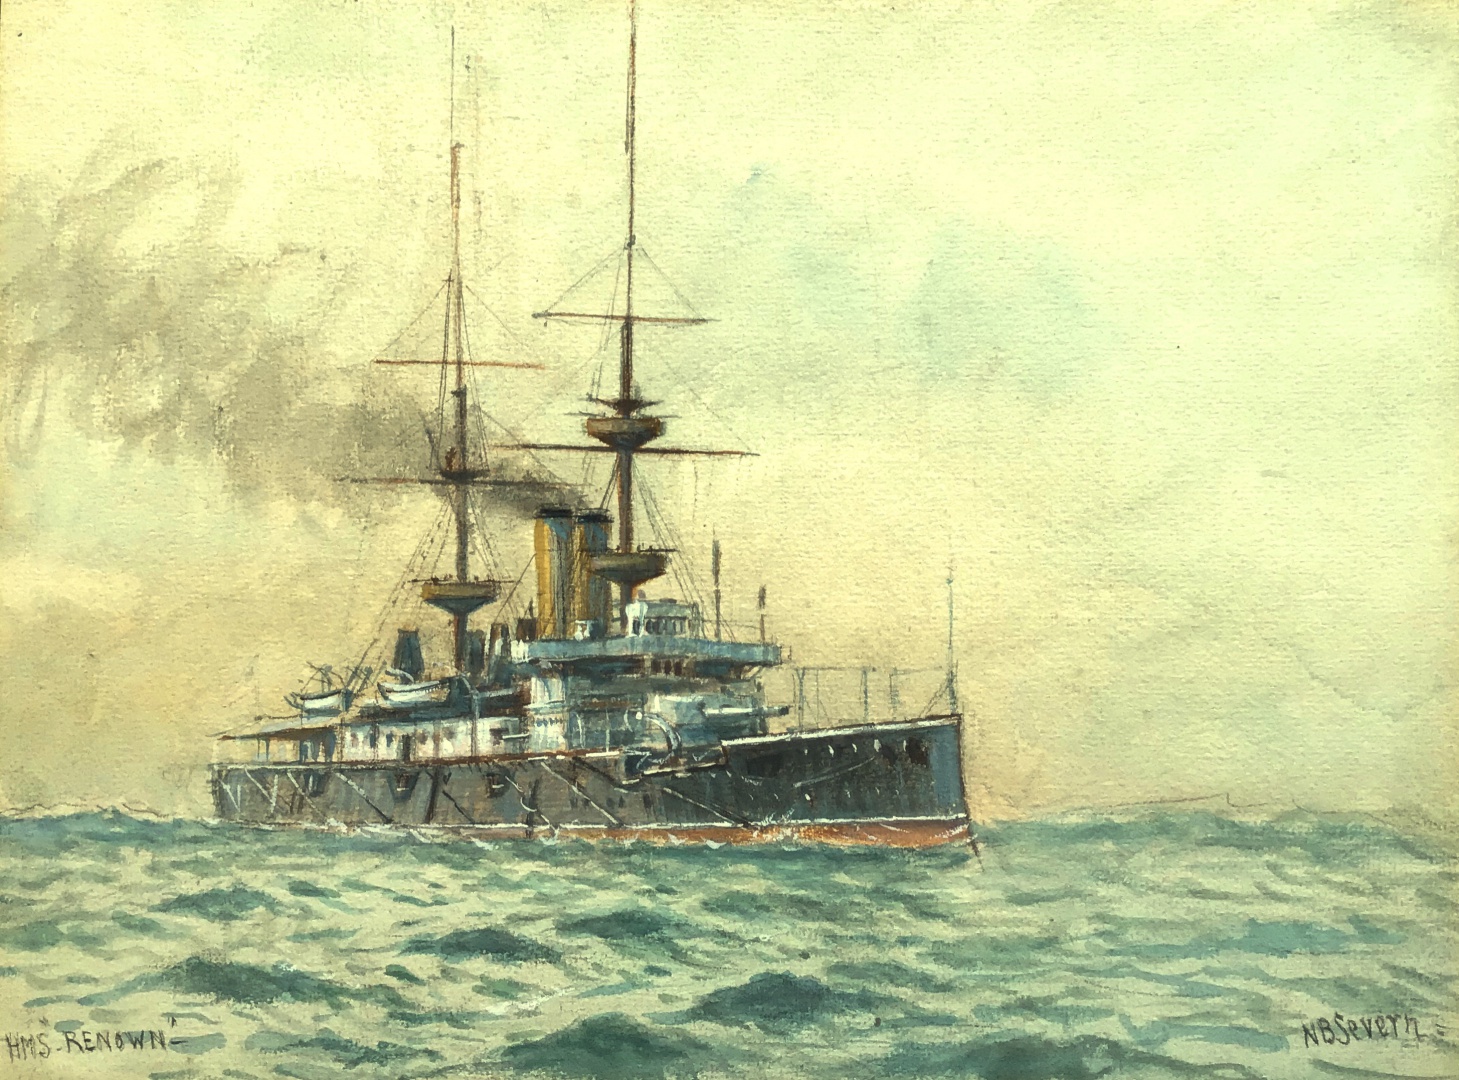 HMS RENOWN of 1895